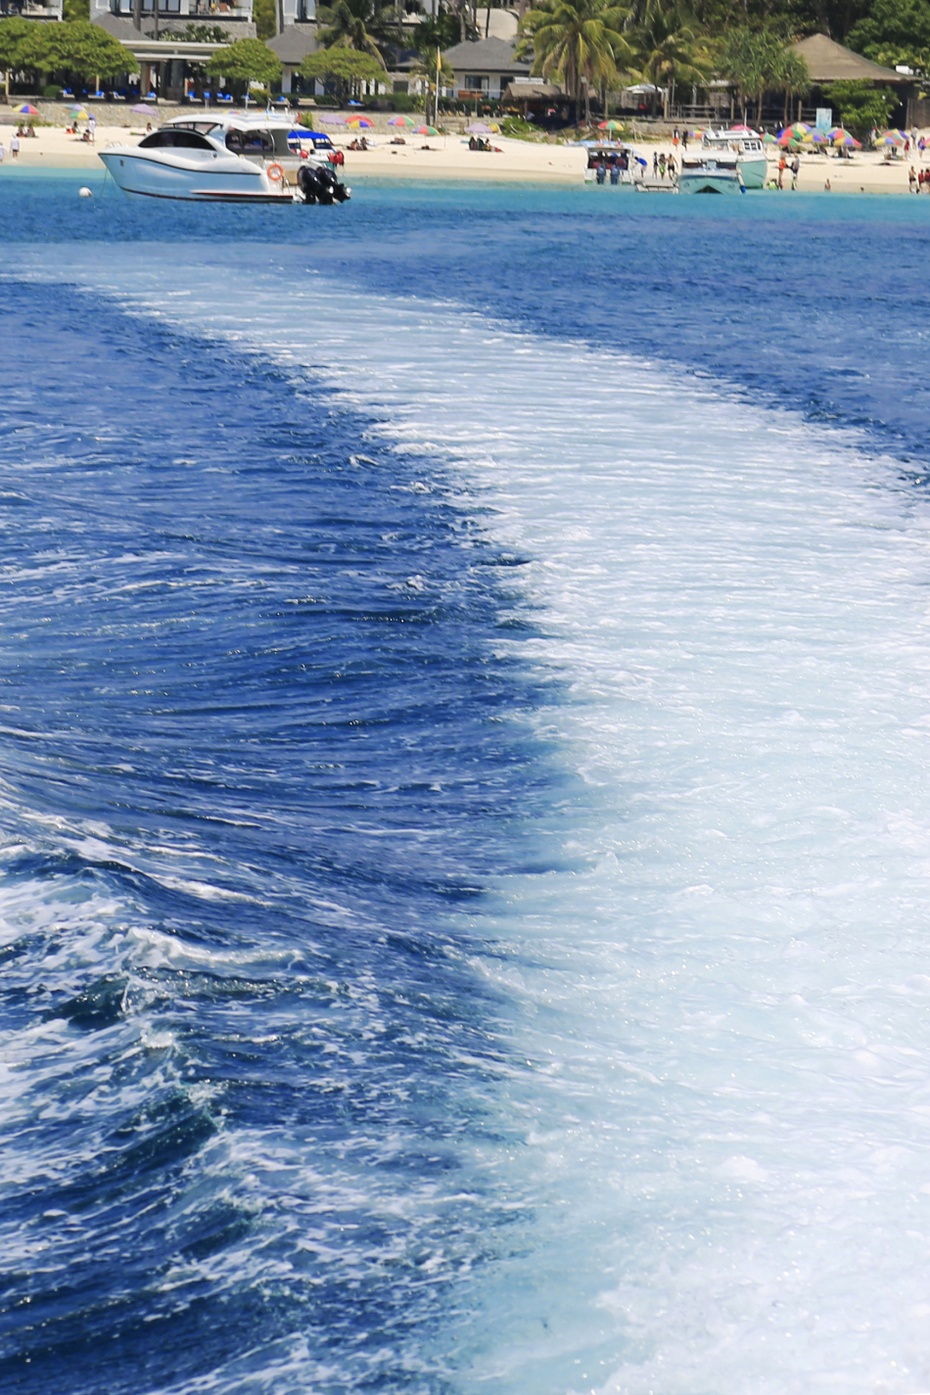 风驰电掣的快艇,在湛蓝的大海上激起一片长长的雪白浪花